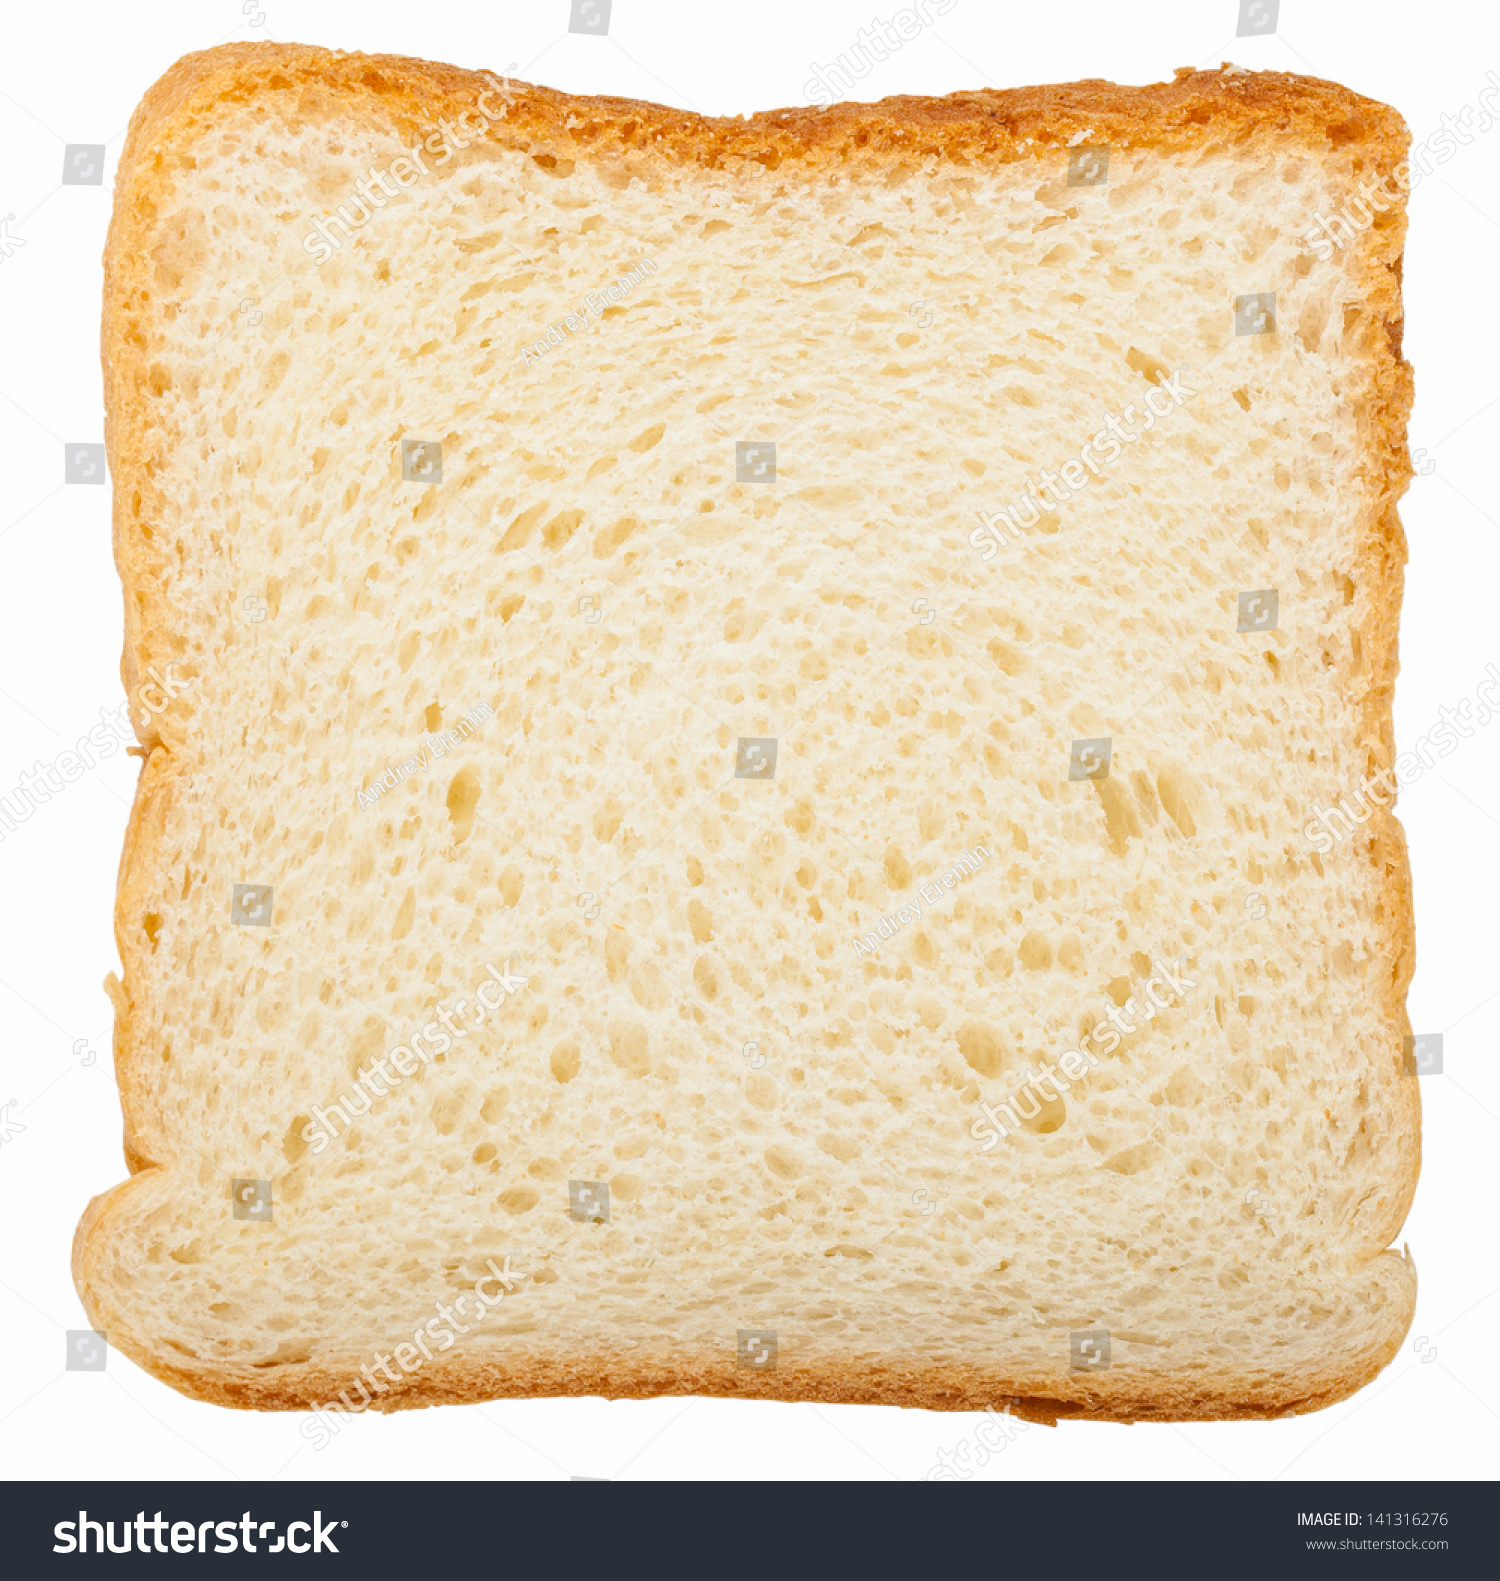 Кусок тостового хлеба. Тостовый хлеб ломтик. Кусок белого хлеба. Хлеб на белом фоне.